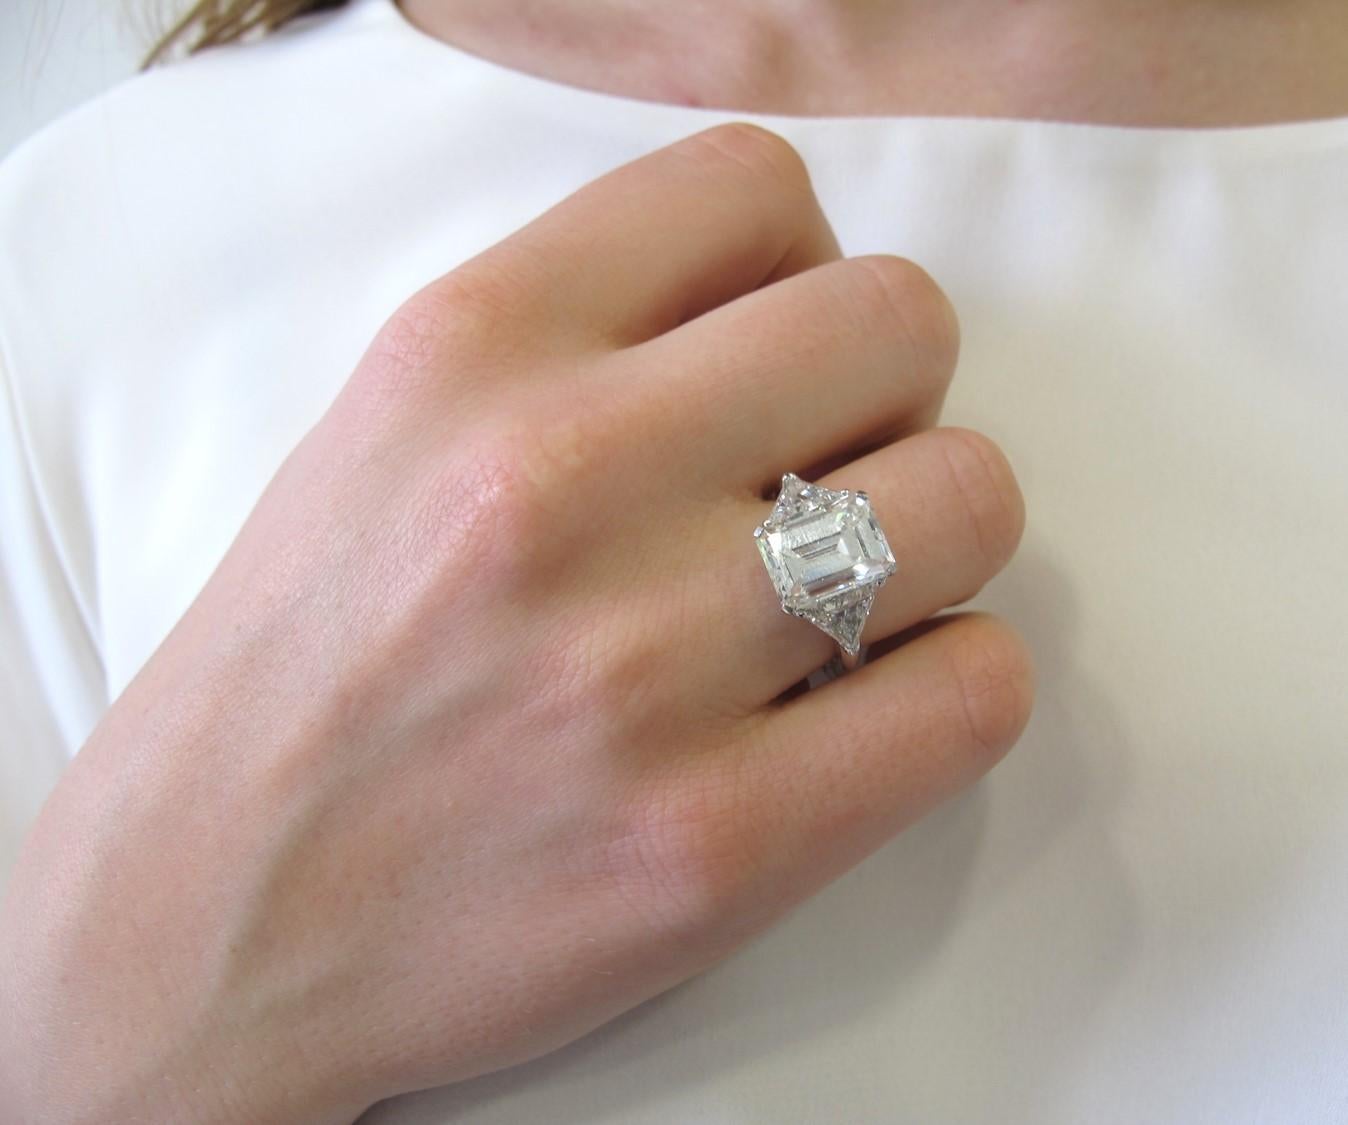 Emerald Cut GIA Certified 4.75 Carat J VS1 Emerald-Cut Diamond Ring in Platinum